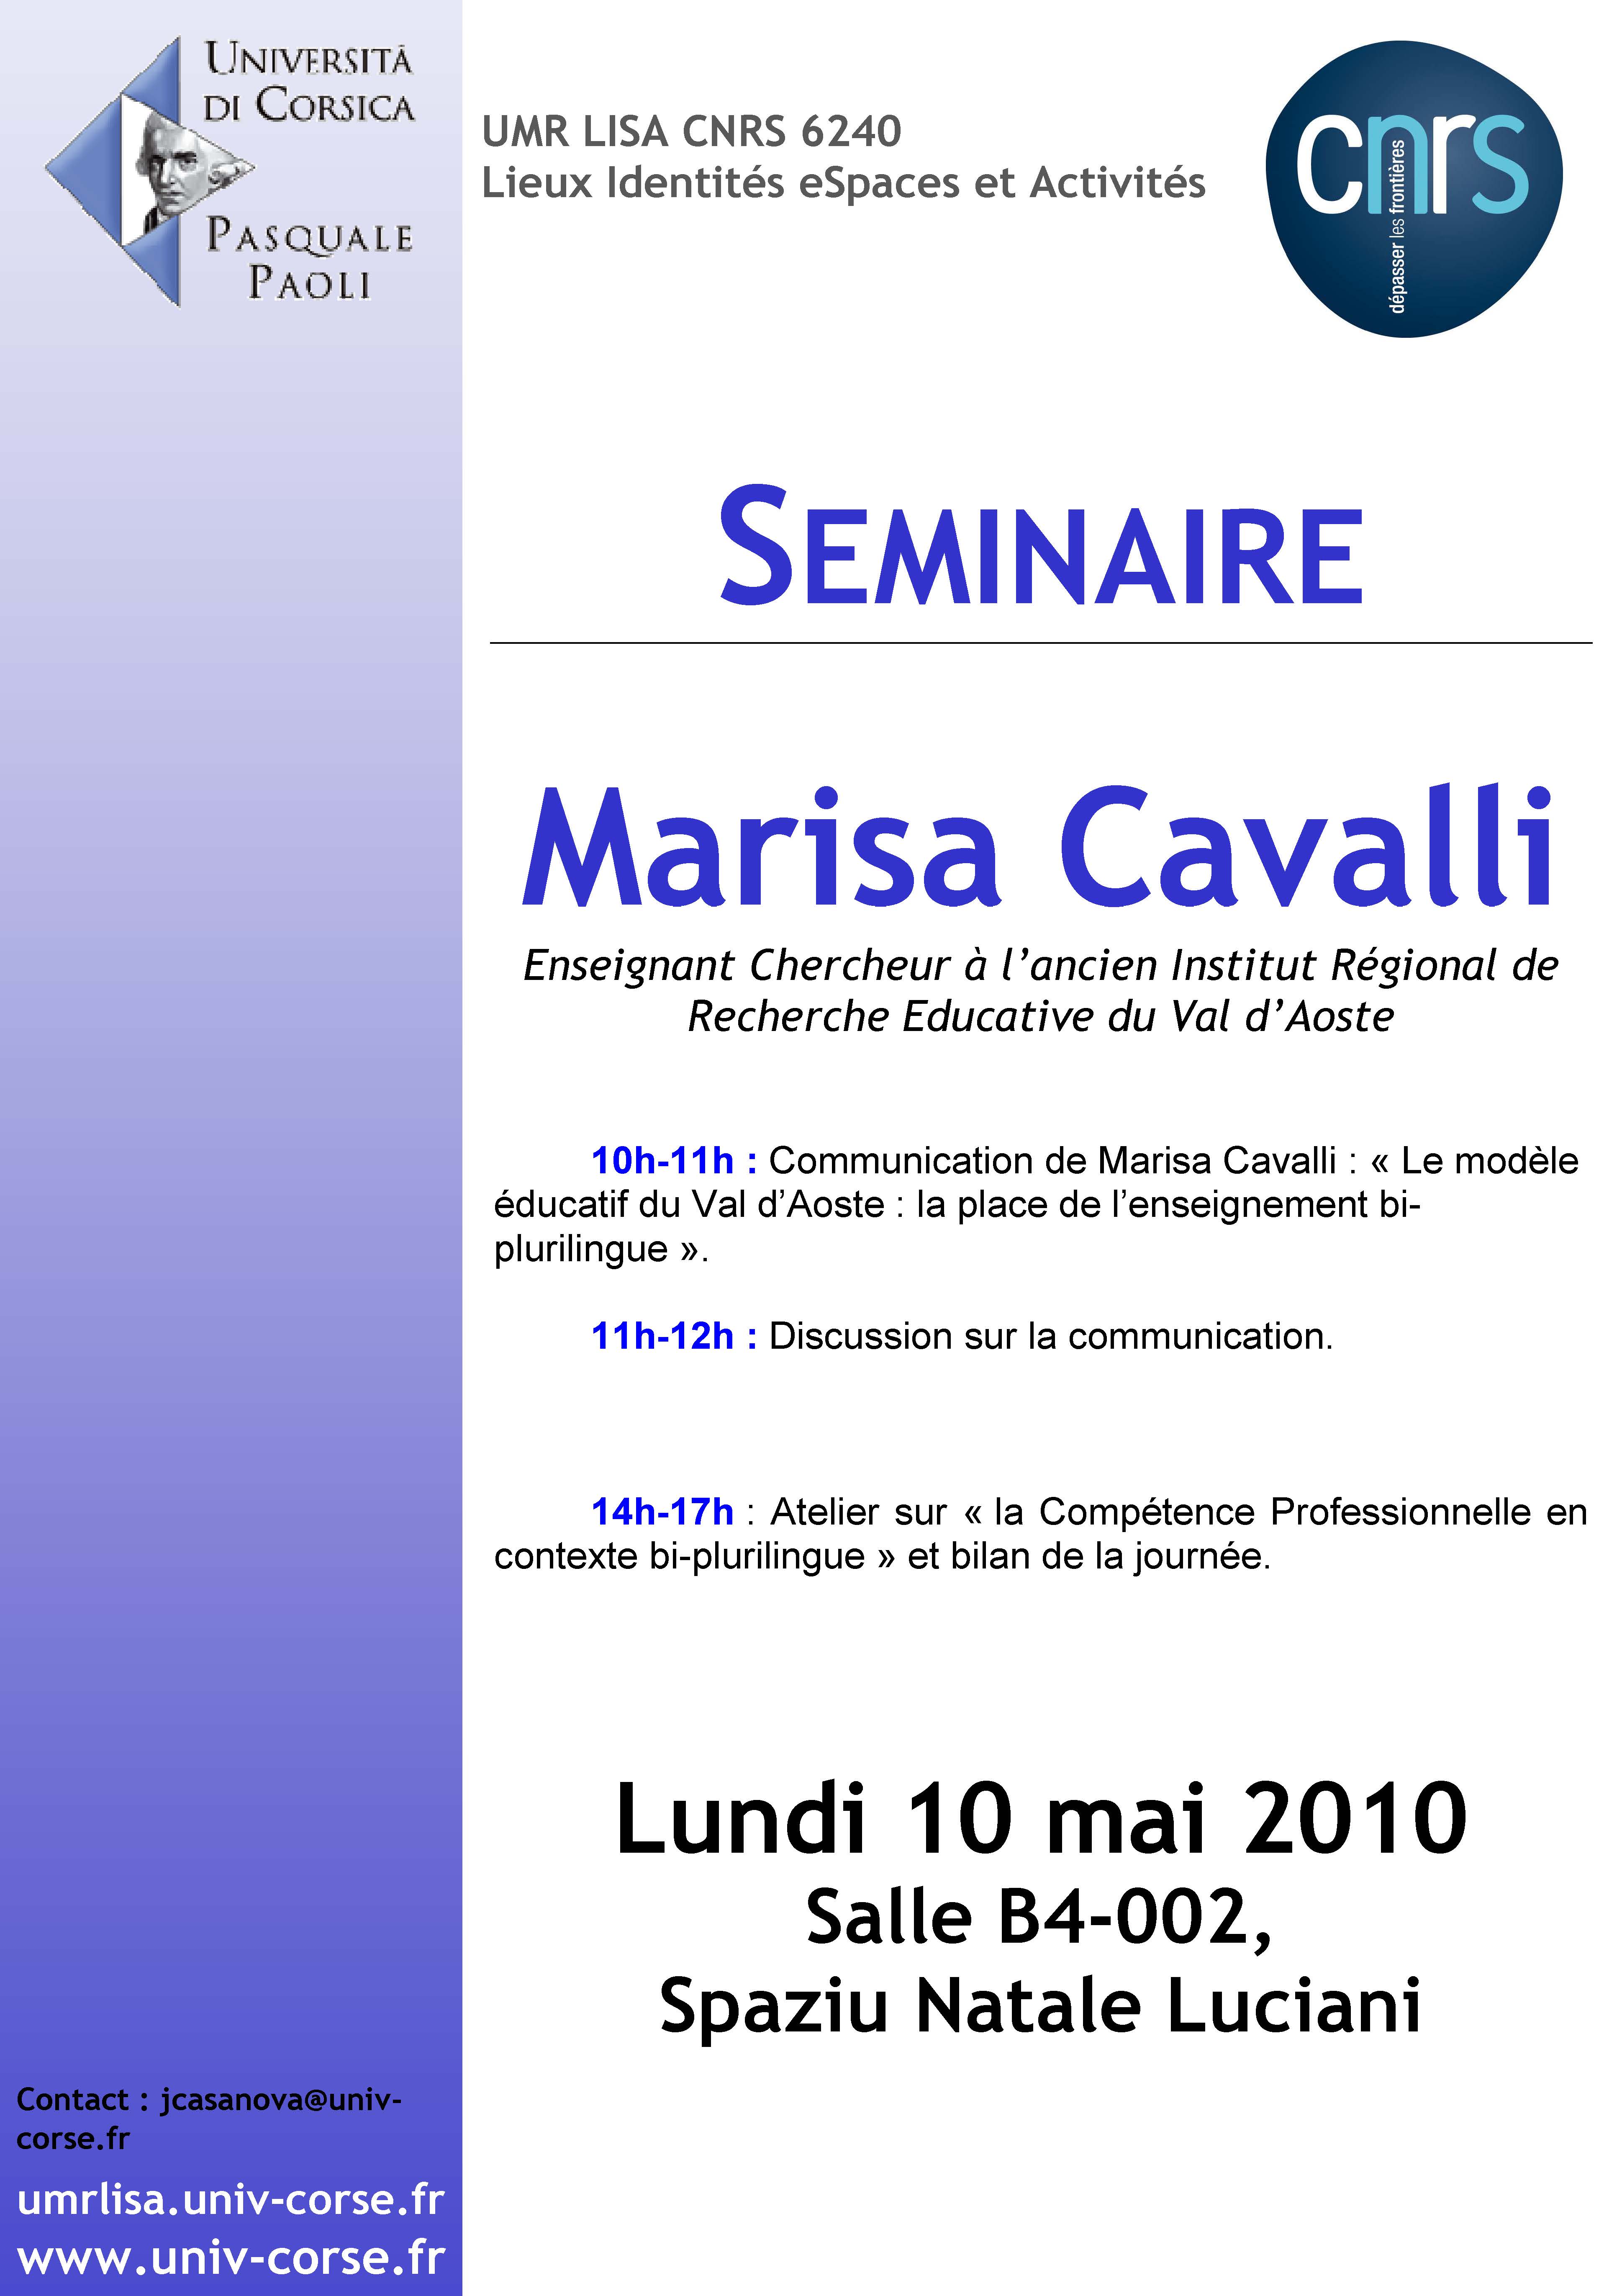 Séminaire Marisa Cavalli - Le modèle éducatif du Val d'Aoste, la place de l'enseignement bi-plurilingue